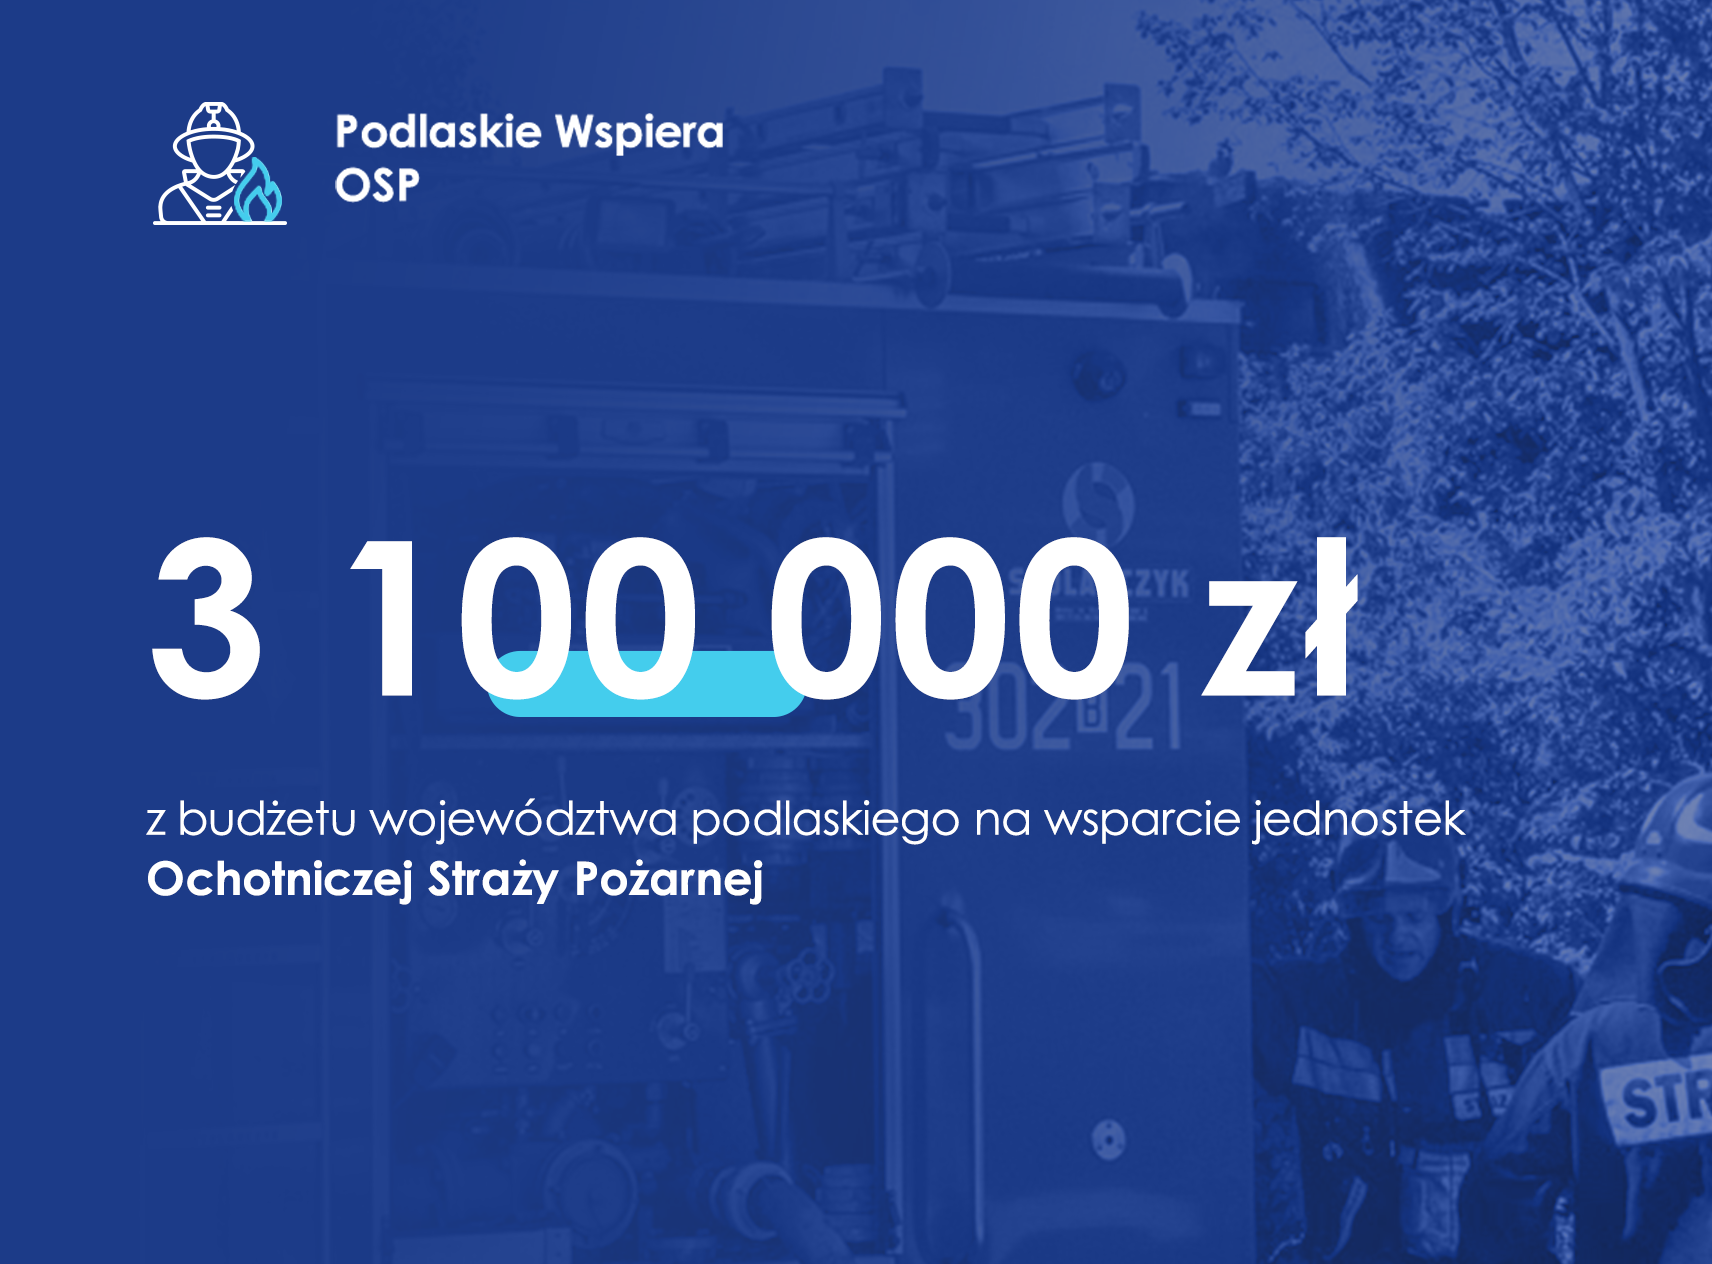 Ponad 3 mln zł z budżetu województwa dla jednostek OSP z regionu